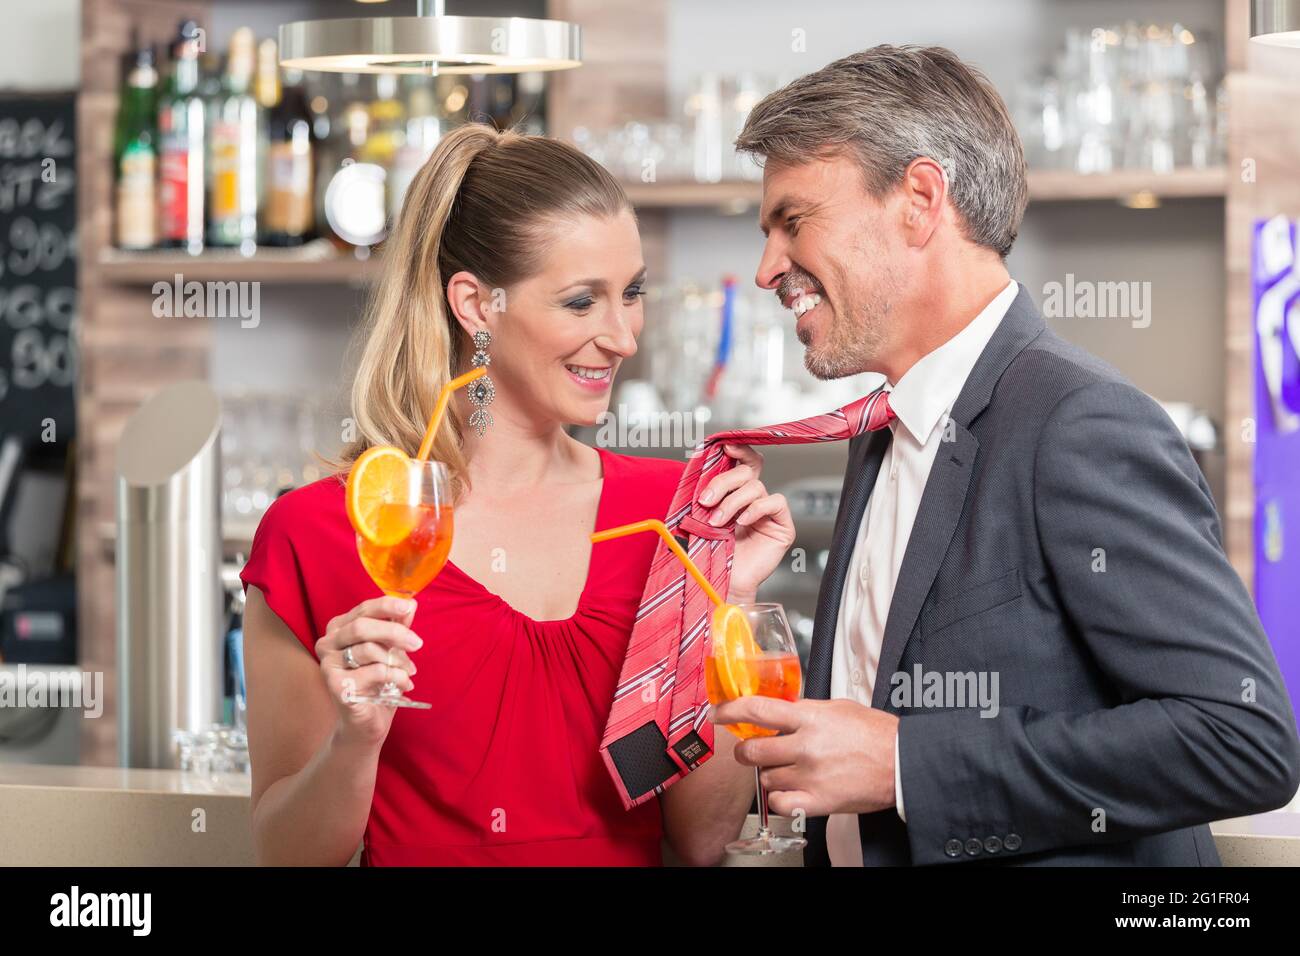 Lächelnde Frau hält ihre Ehemann Krawatte, während sie einen orangenen Cocktail in einer anderen Hand hält Stockfoto